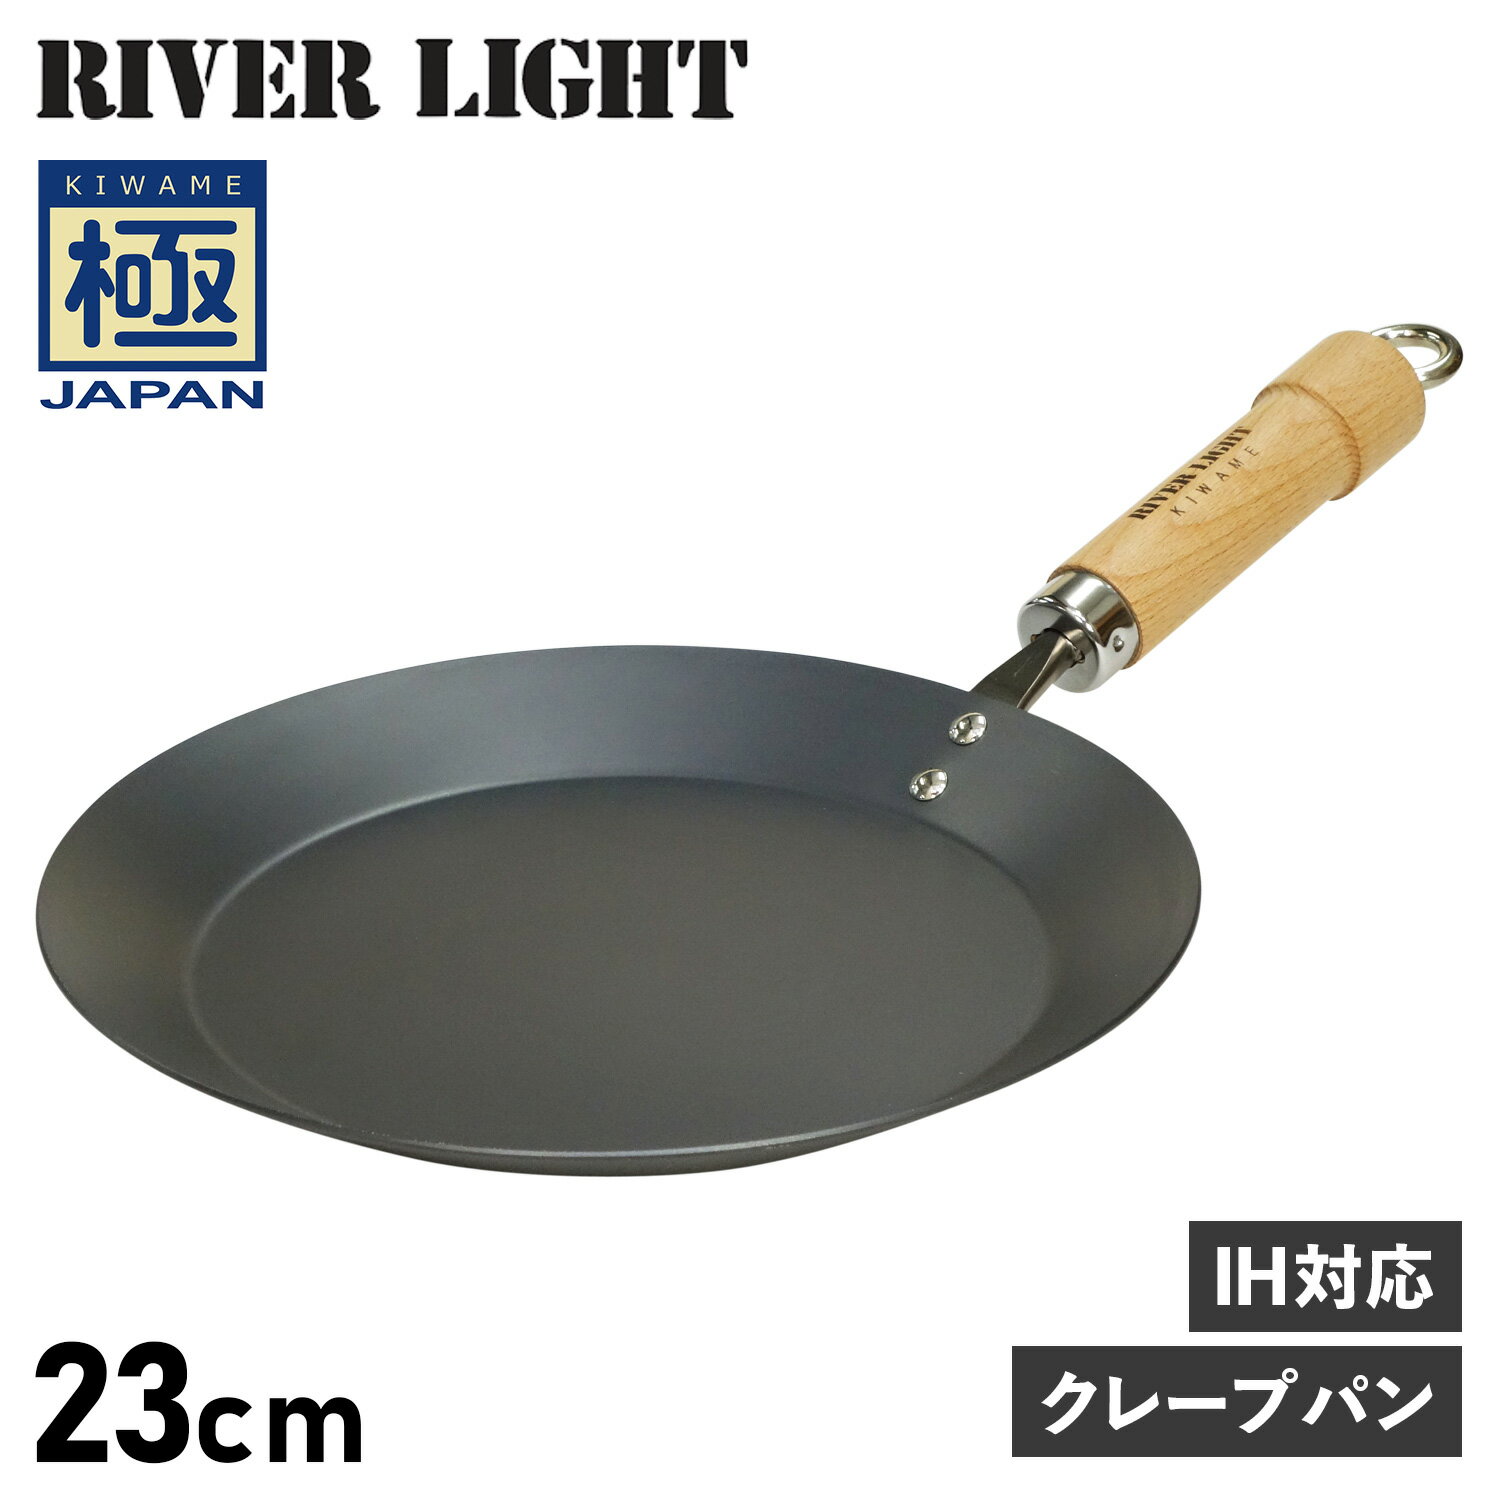 RIVER LIGHT リバーライト 極 クレープメーカー クレープパン フライパン 23cm IH ガス対応 鉄 極JAPAN J1723 アウトドア